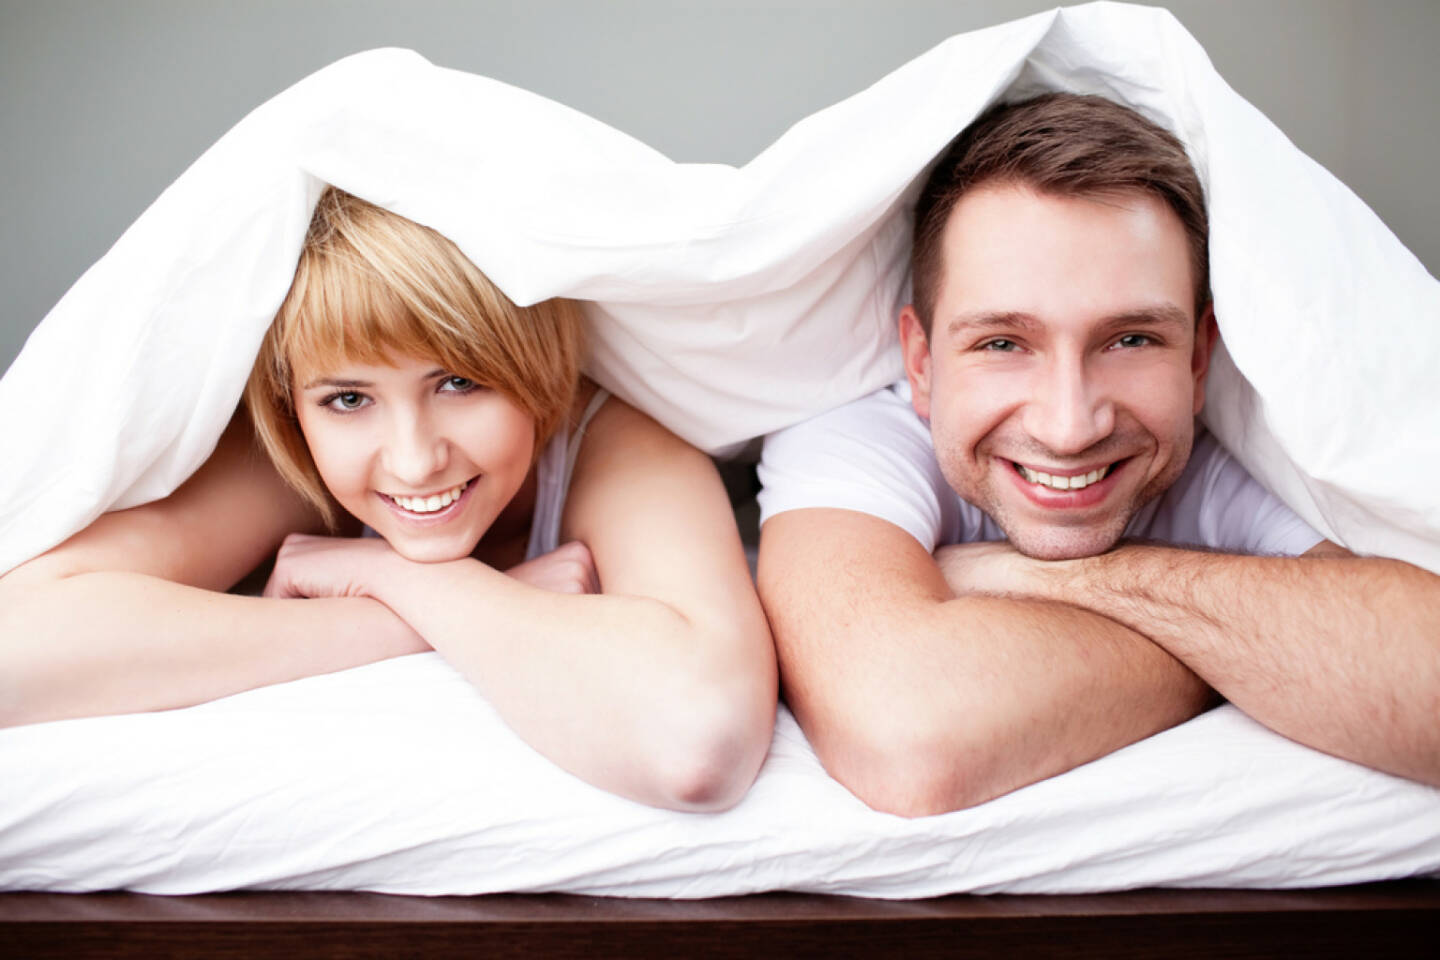 Decke, lachen, schlafen, unter einer Decke stecken, verstecken, http://www.shutterstock.com/de/pic-130173584/stock-photo-happy-couple-lying-in-bed-under-the-blanket.html 